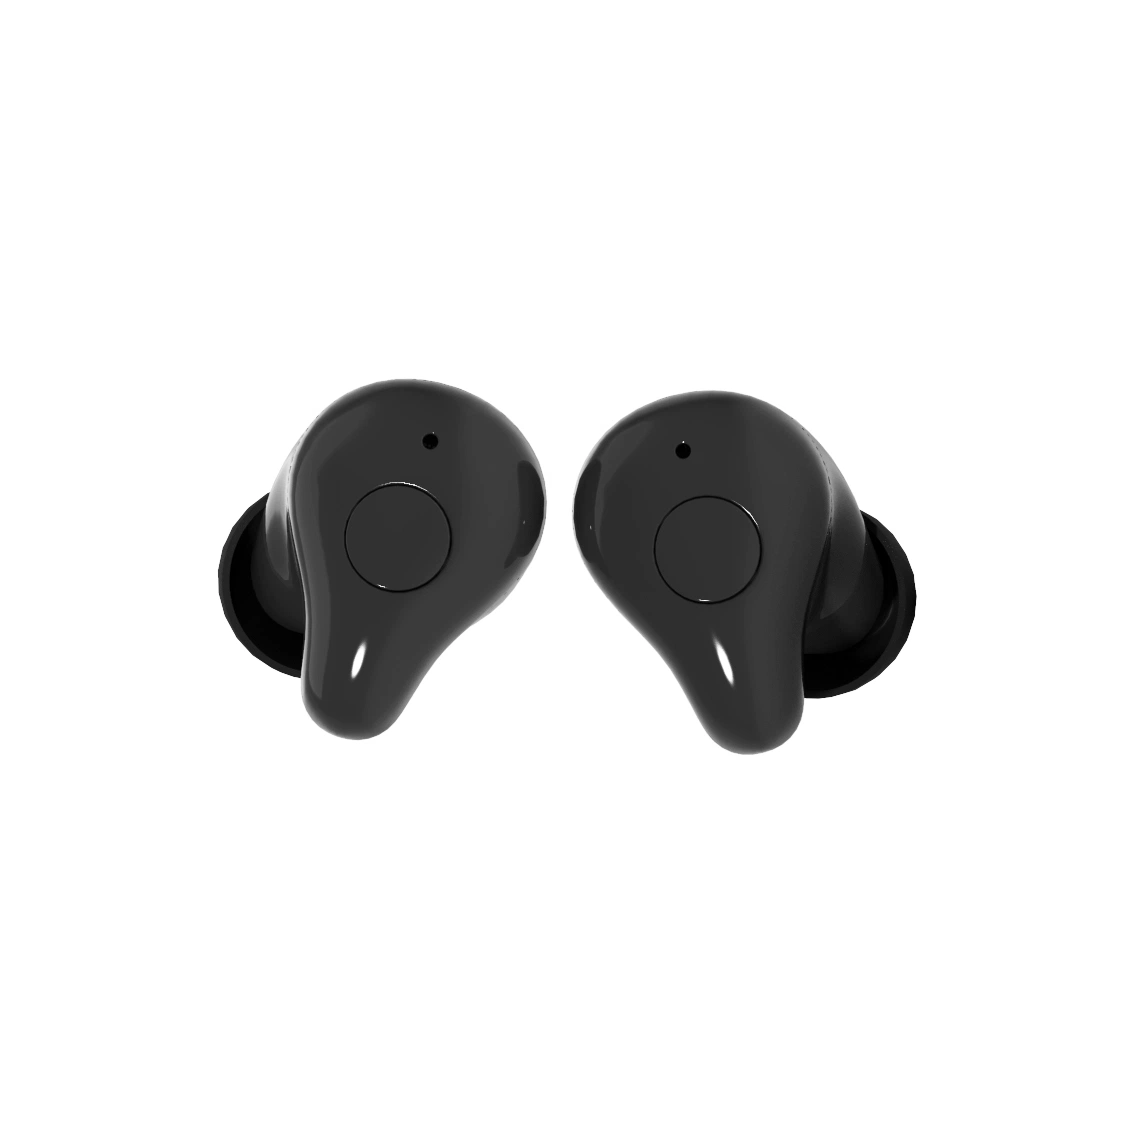 prix d'usine de produit Bluetooth ® d'aide auditive rechargeable Best Earsmate Miniture Intra-auriculaire 2 avec Wi-Fi, fonction d'assistance, perte auditive pour les sourds